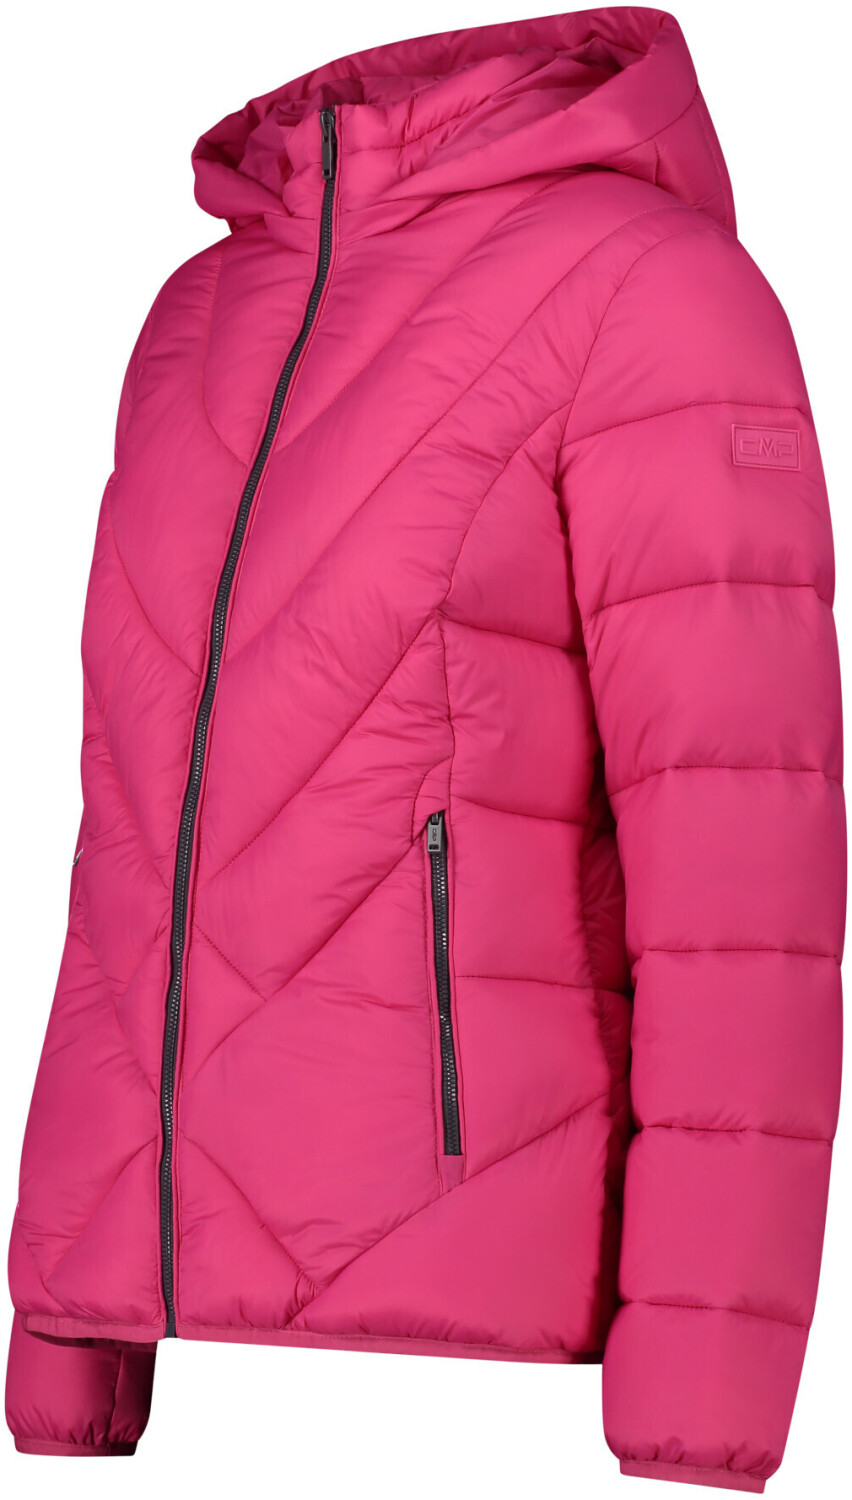 CMP Woman's Jacket (32K3026) fucsia ab 55,35 € | Preisvergleich bei